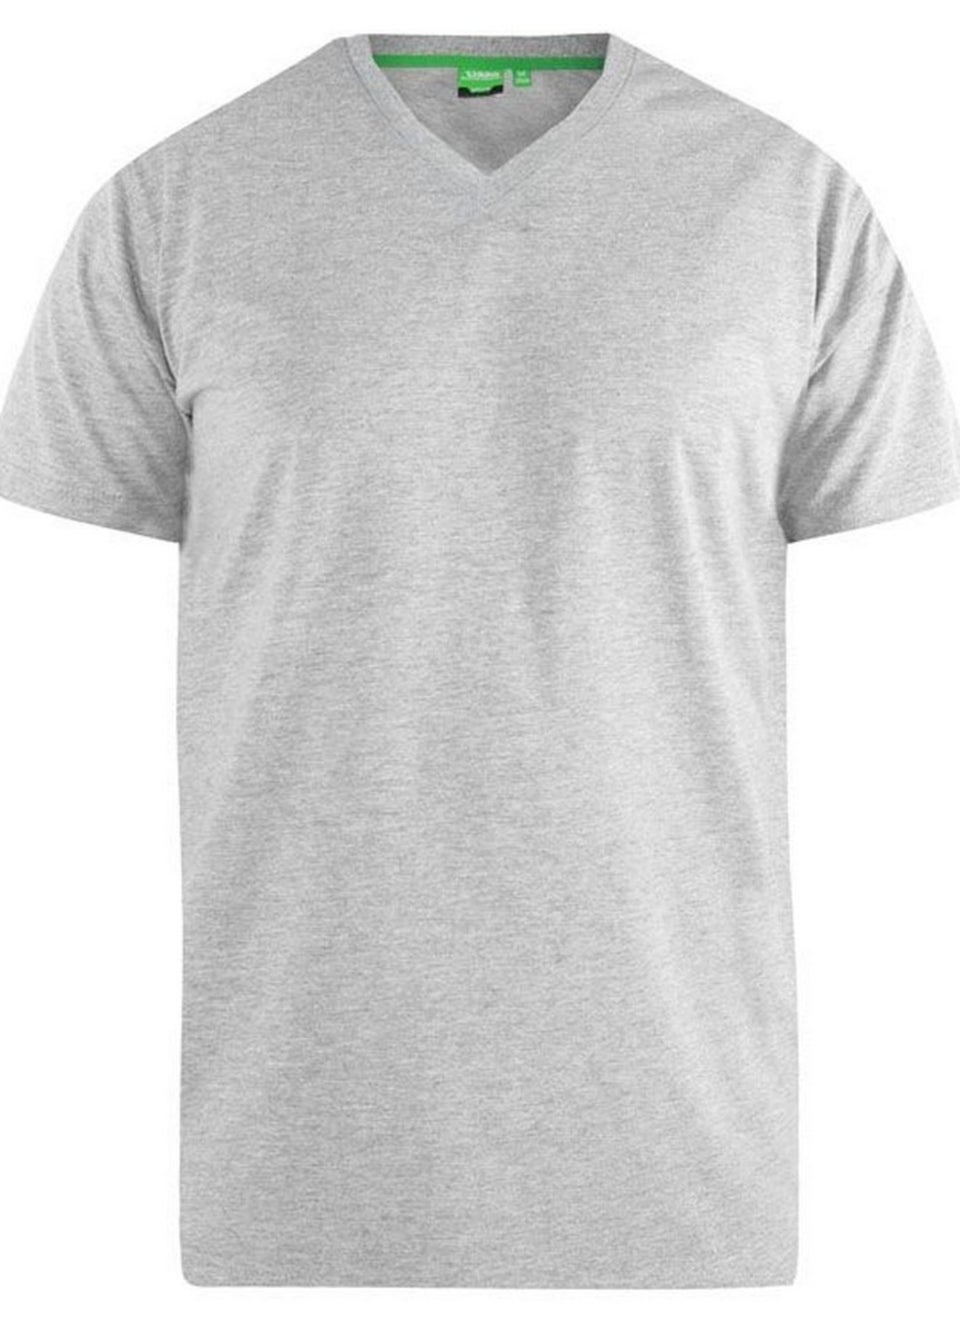 Duke Black/Grey Fenton Kingsize Round Neck T-shirts (Pack of 2)